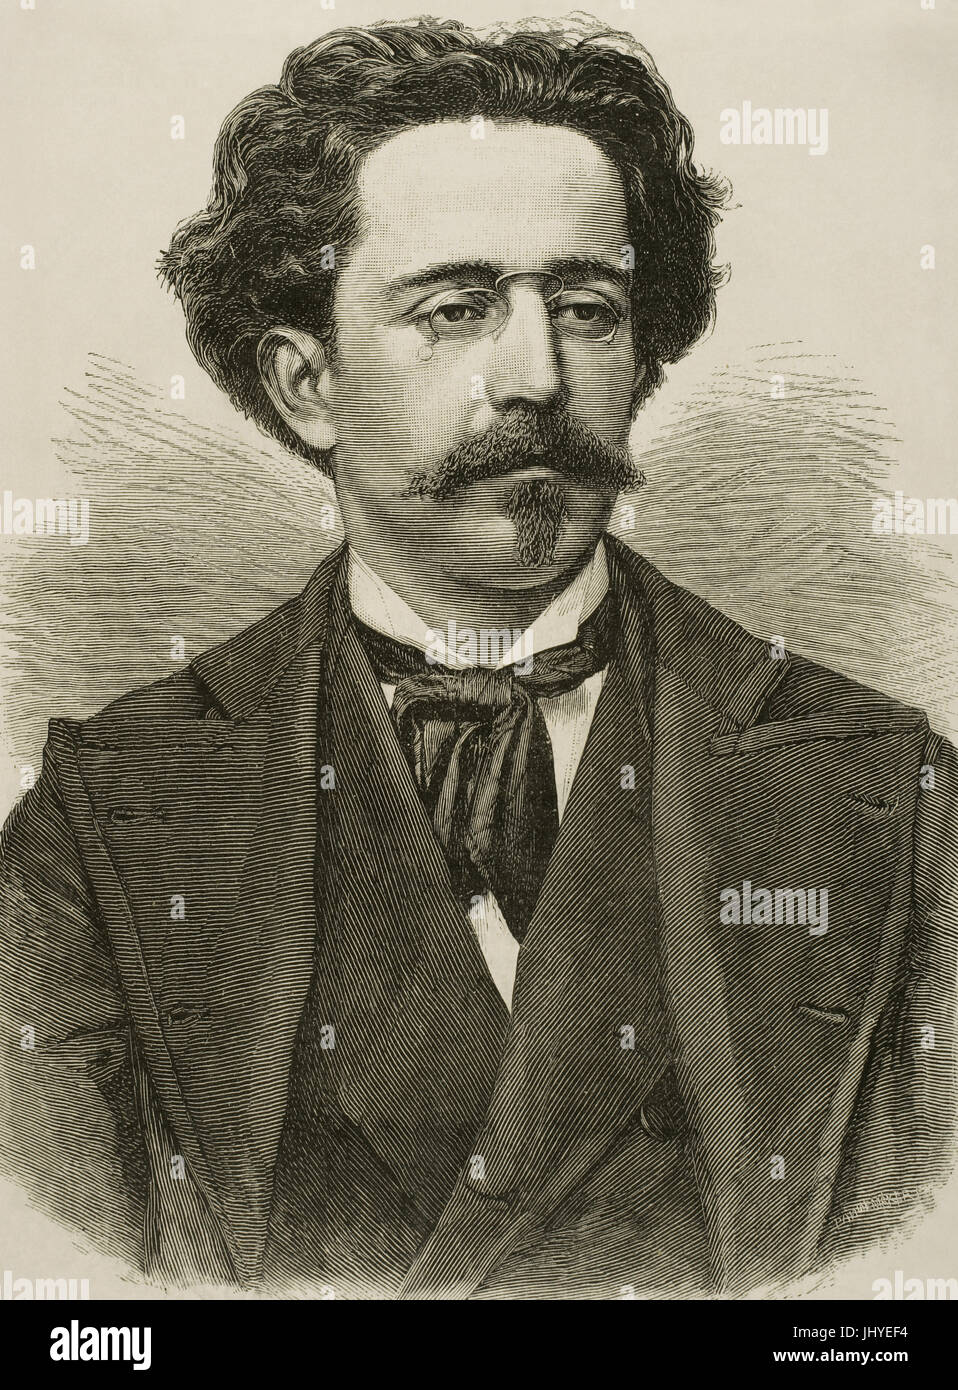 Gaspar Villate Montes (1851-1891). Le compositeur et pianiste cubain. Gravure par Pannemaker. L'illustration espagnole et américaine, 1878. Banque D'Images